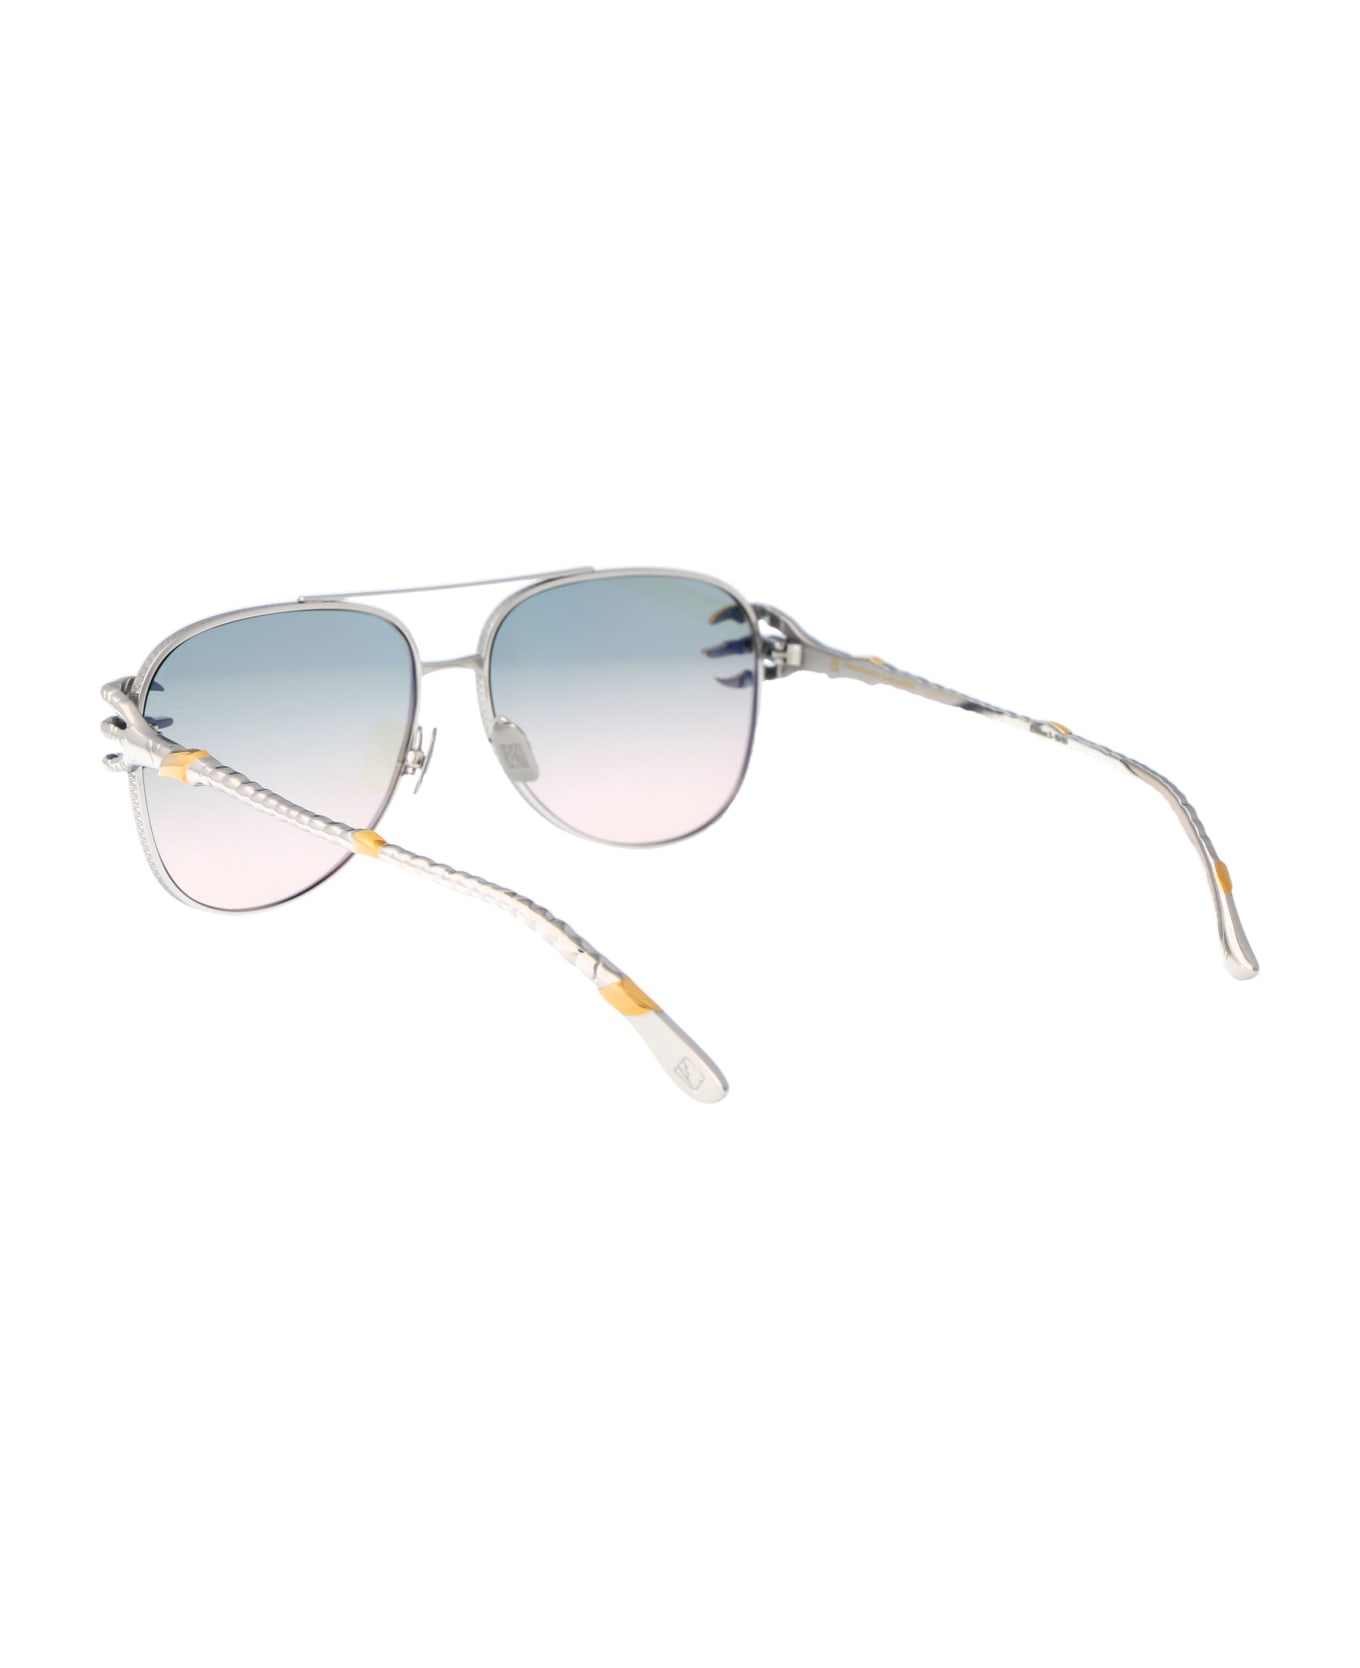 Anna-Karin Karlsson Claw Voyage Sunglasses - White Gold Blush